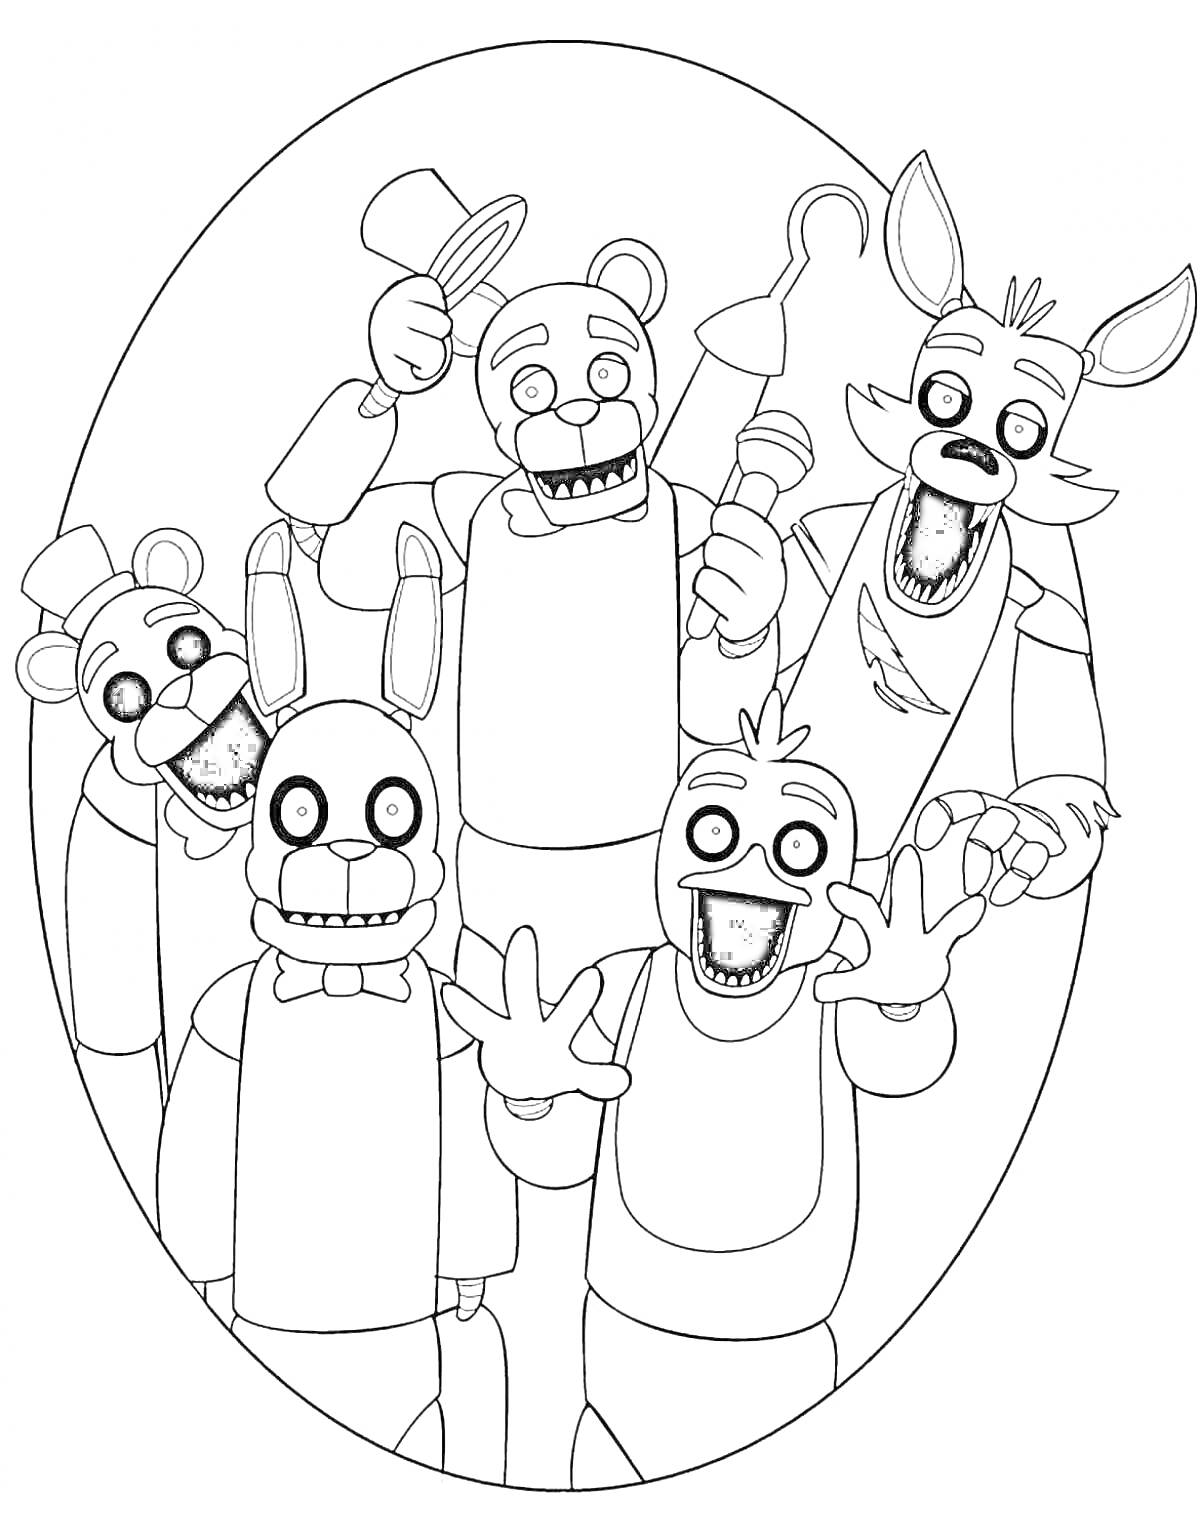 Раскраска Пять аниматроников в овальной рамке - Фредди с цилиндром, Бонни с гитарой, Чика с микрофоном, Фокси с пиратским крюком и Мангл с двумя головами.